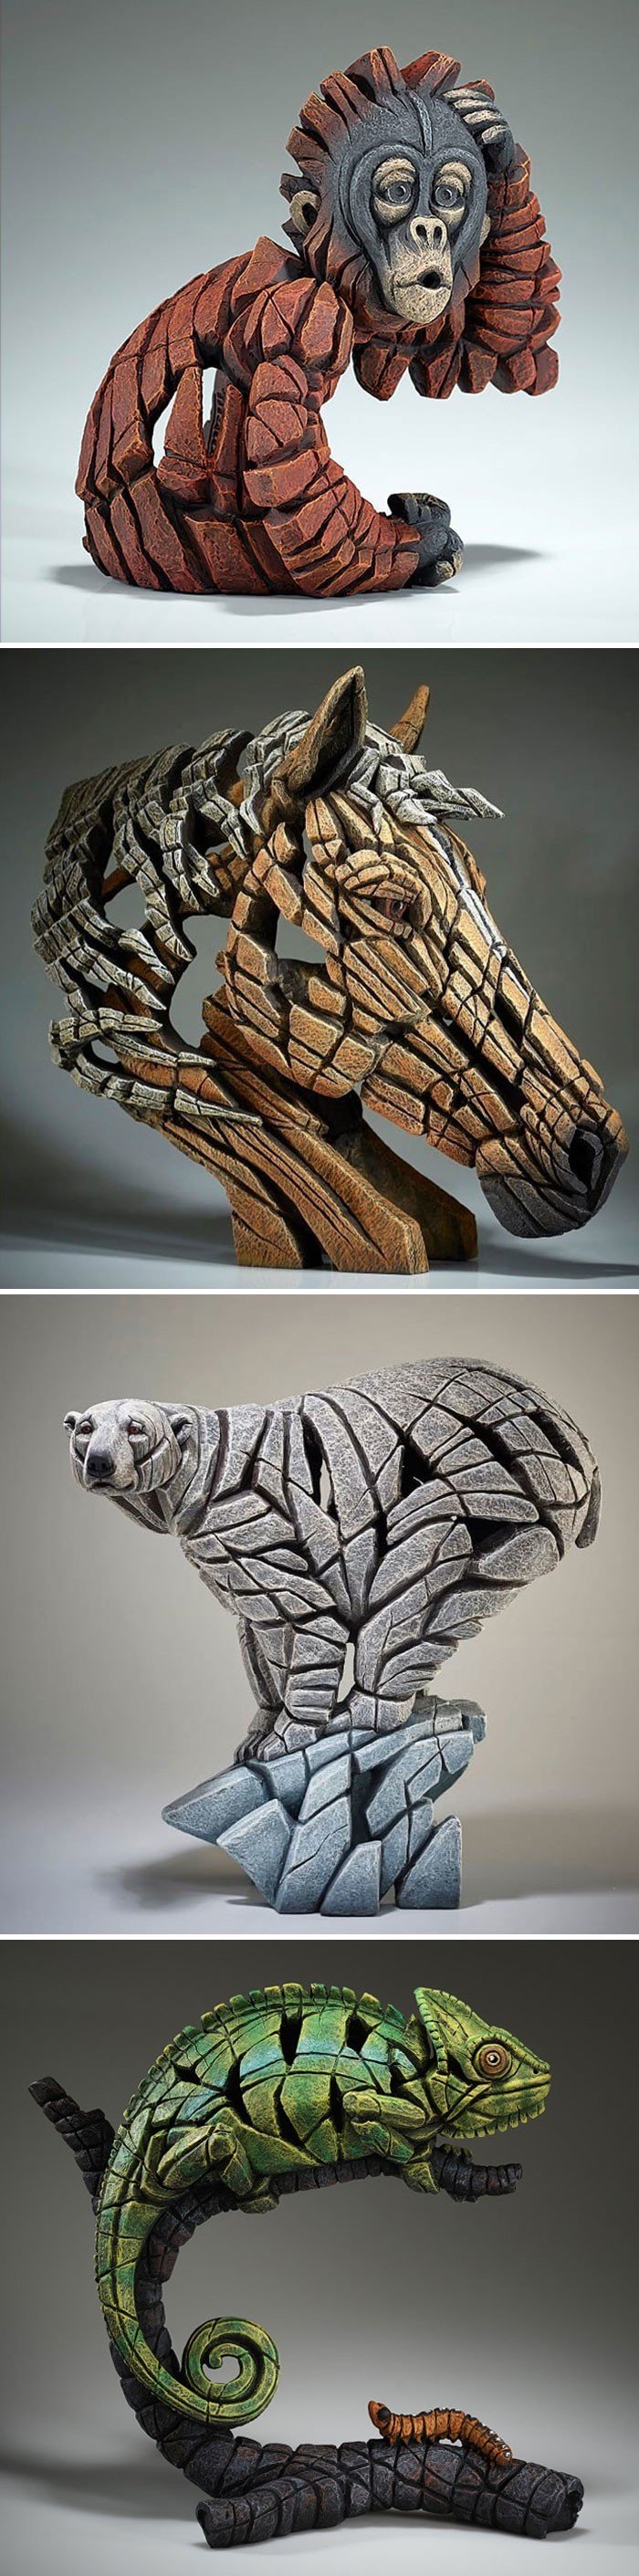 Снимки крутейших скульптур от современных мастеров со всего света